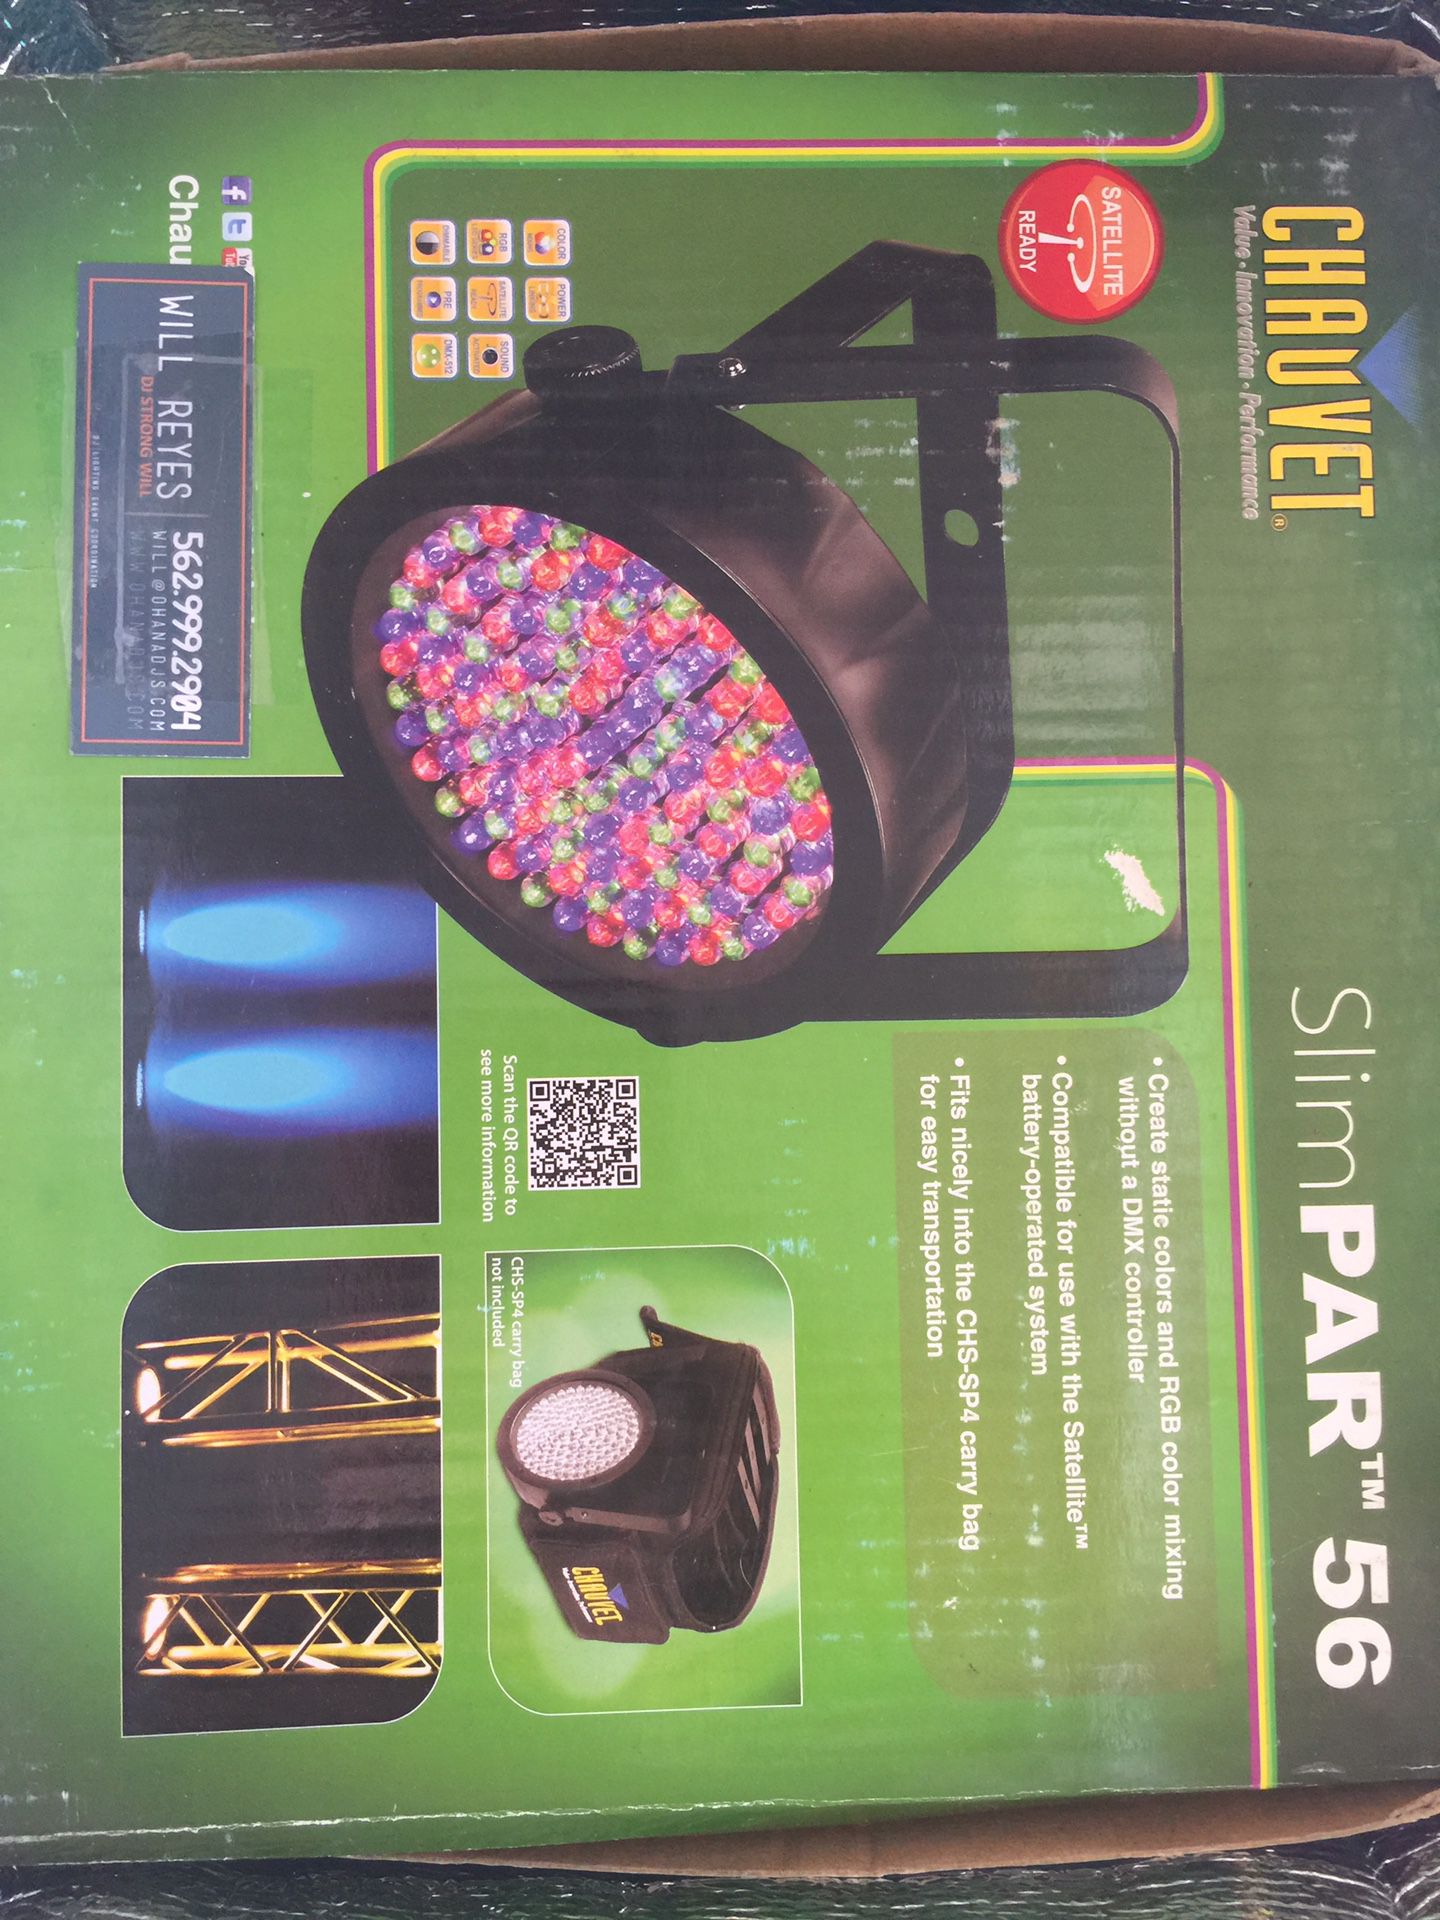 Chauvet slimpar can LED lights DJ